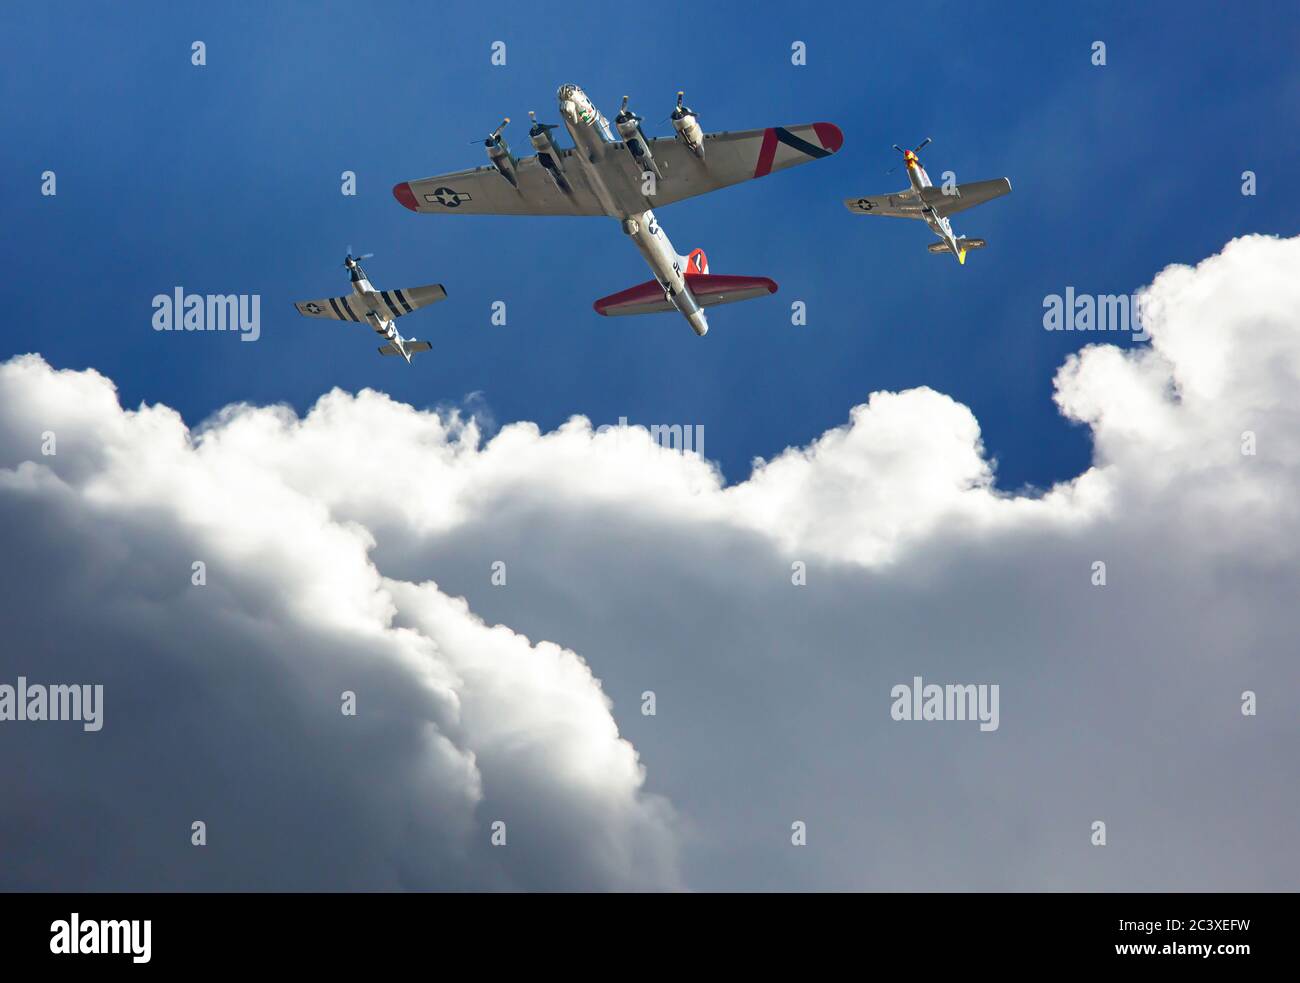 Un bombardiere B-17 'Flying Fortress' è scortato da due combattenti P-51 Mustang sopra le drammatiche nuvole in un cielo blu profondo. Foto Stock